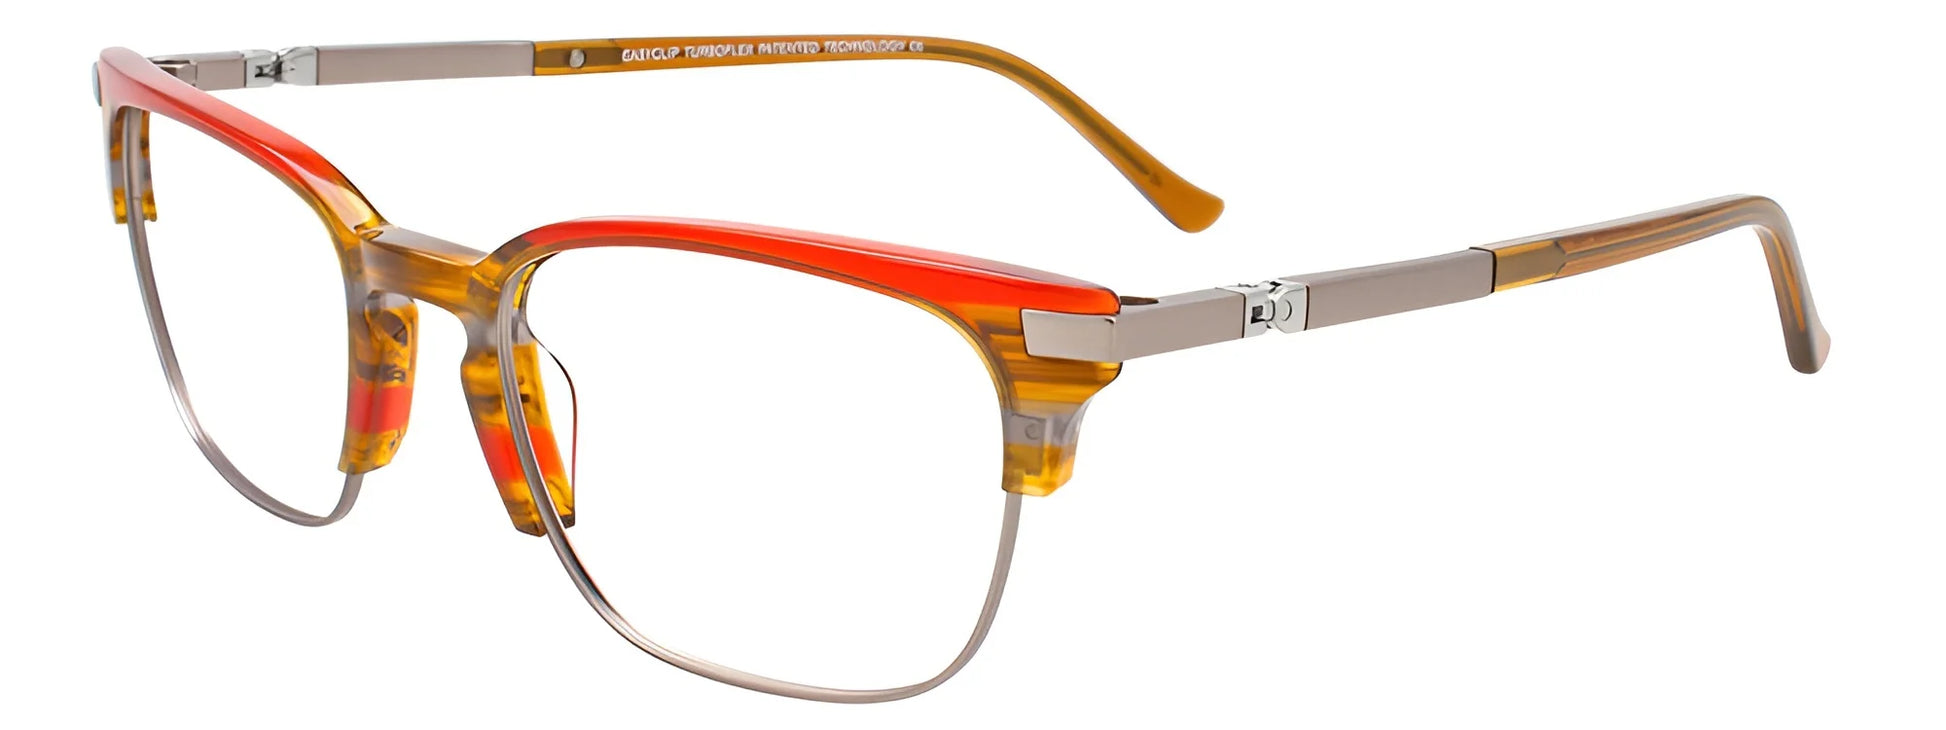 EasyClip EC531 Eyeglasses Brown & Red & Grey Marbled & Matt Steel